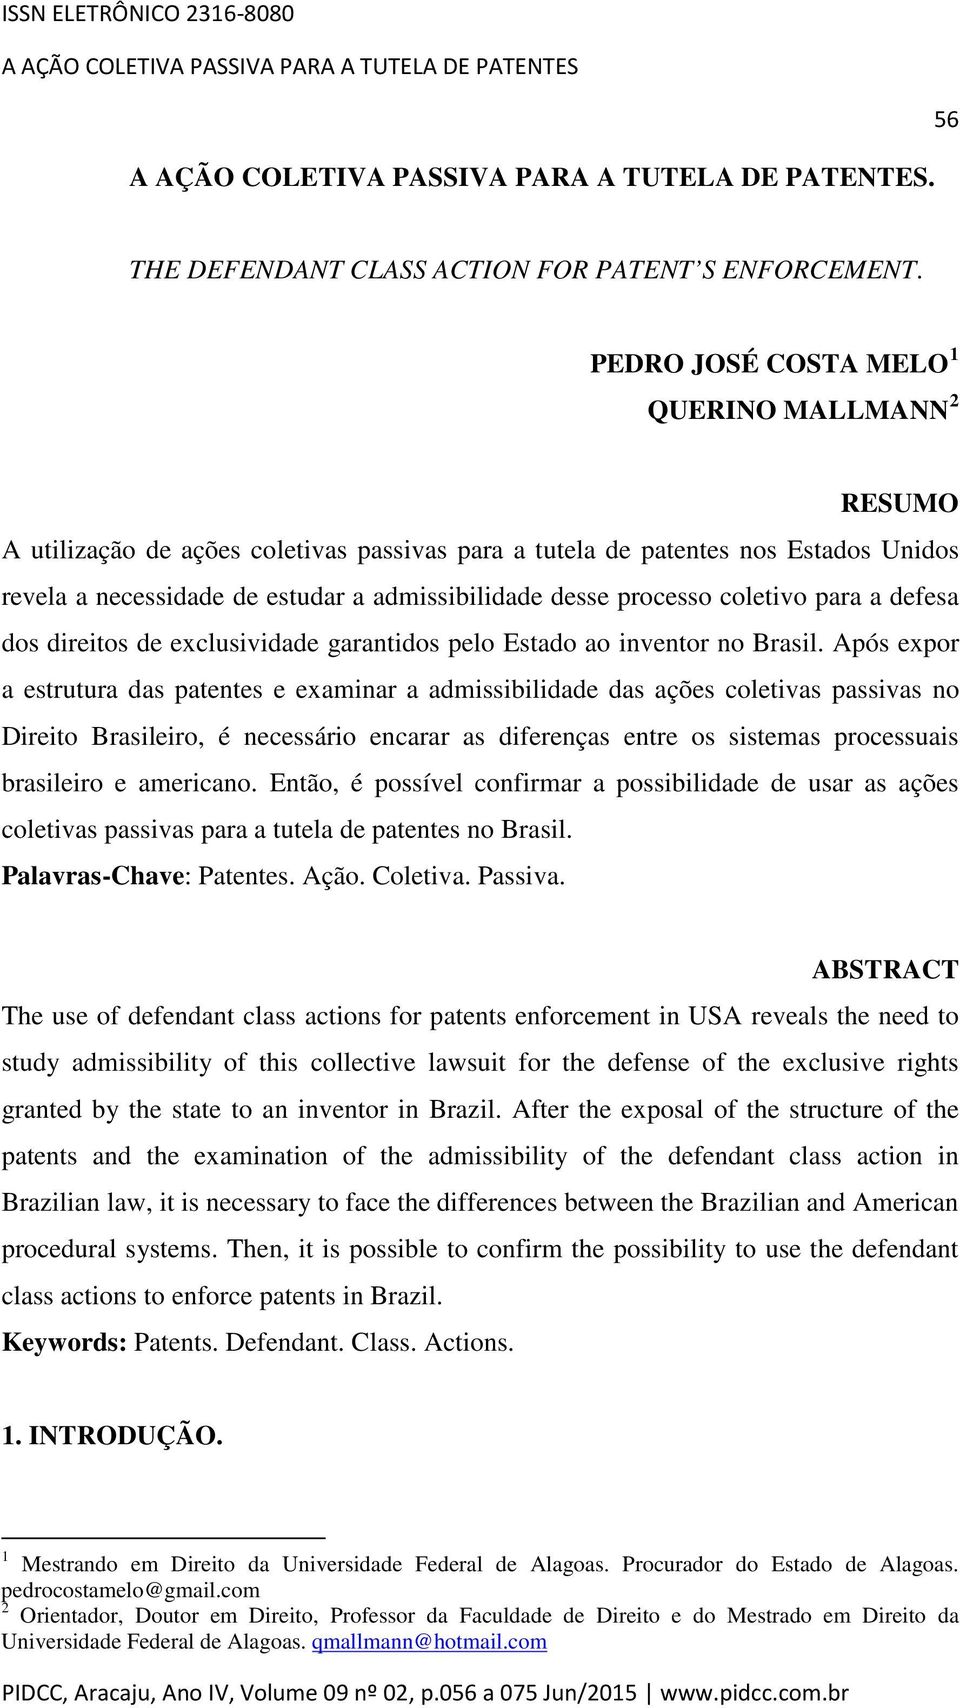 processo coletivo para a defesa dos direitos de exclusividade garantidos pelo Estado ao inventor no Brasil.